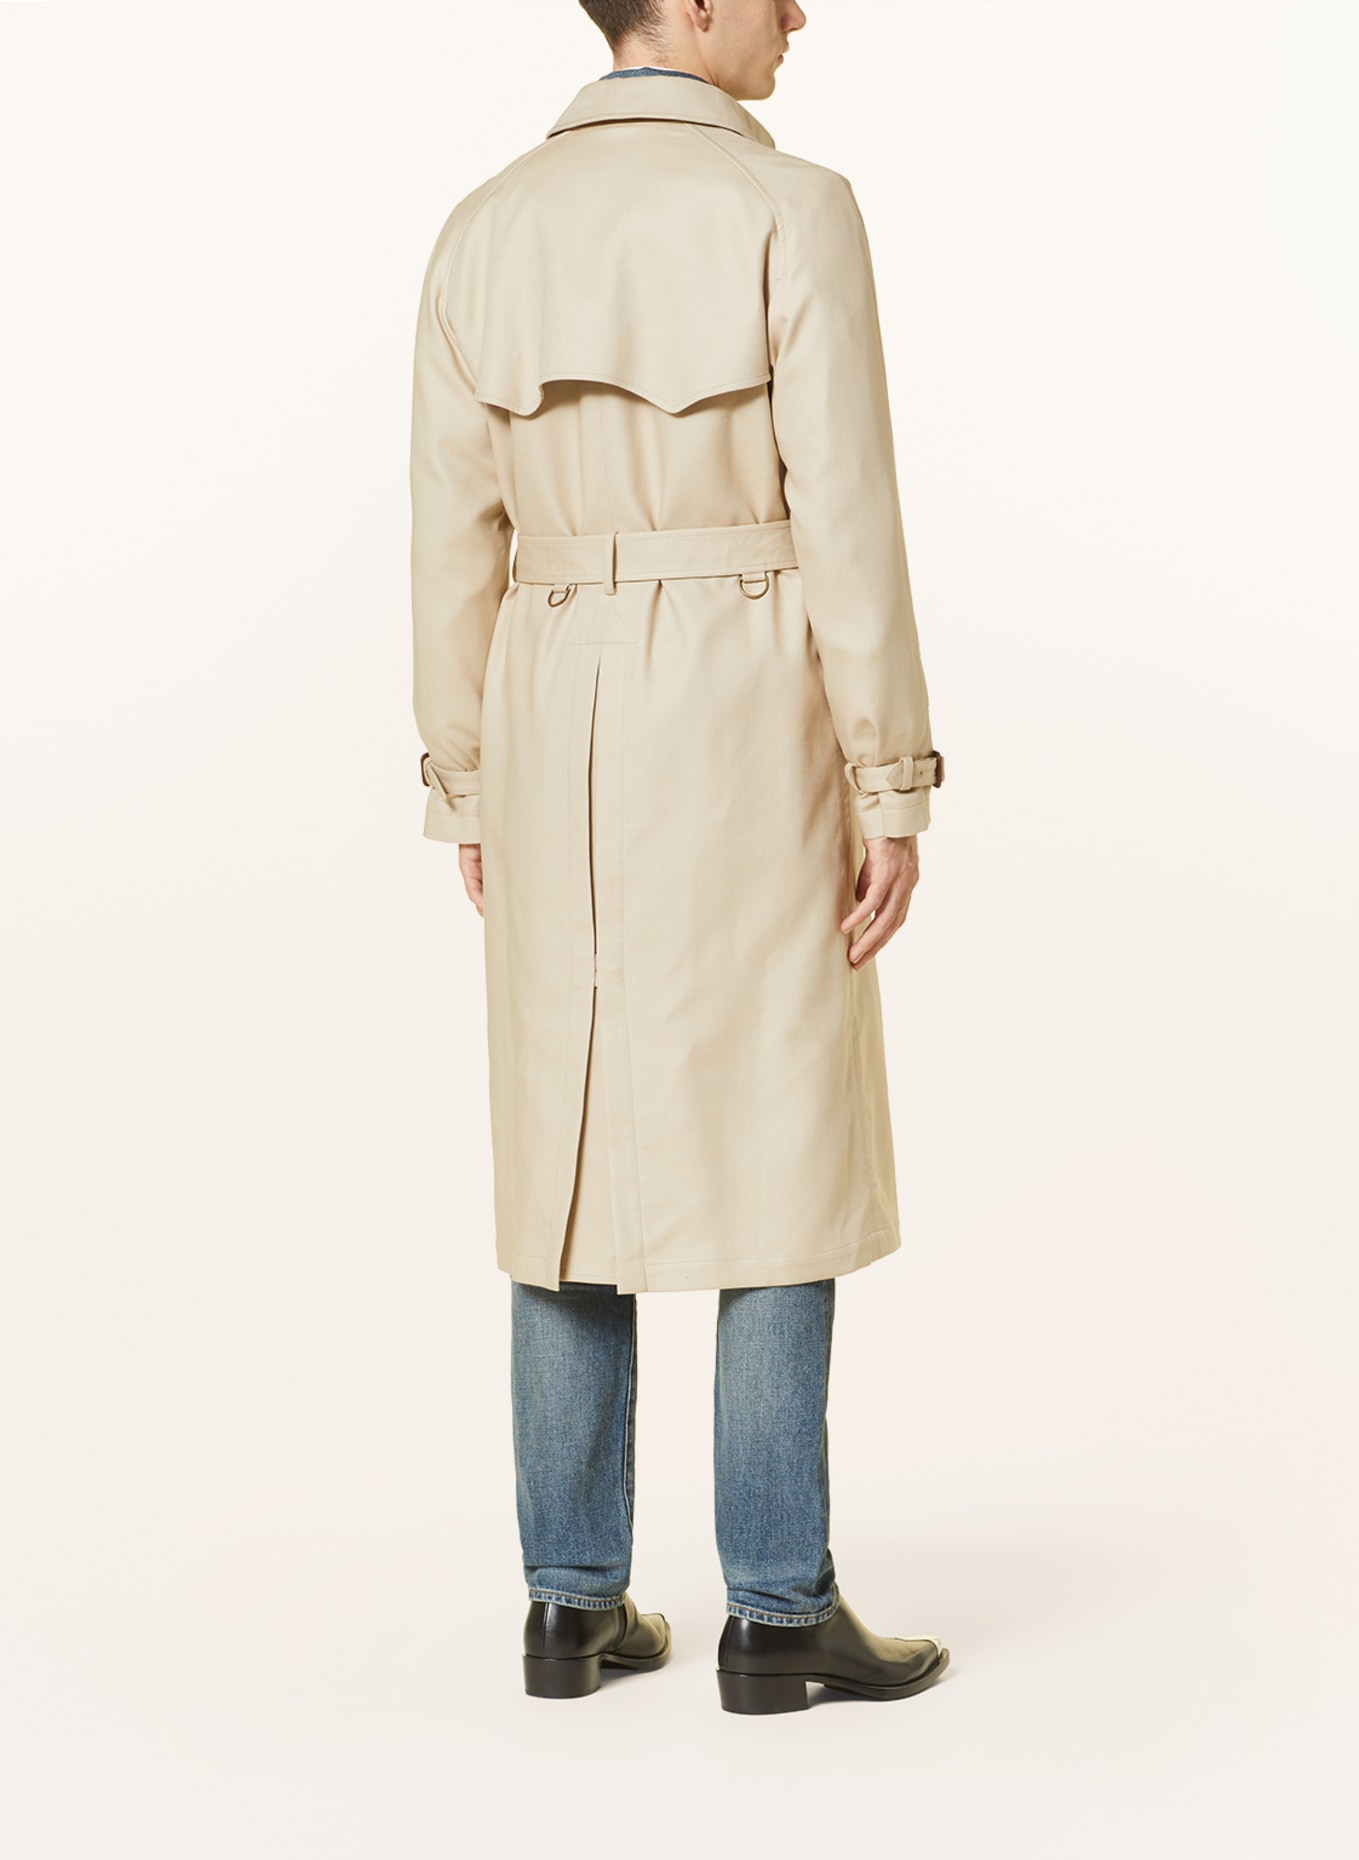 RALPH LAUREN PURPLE LABEL Trench coat, Color: BEIGE (Image 4)